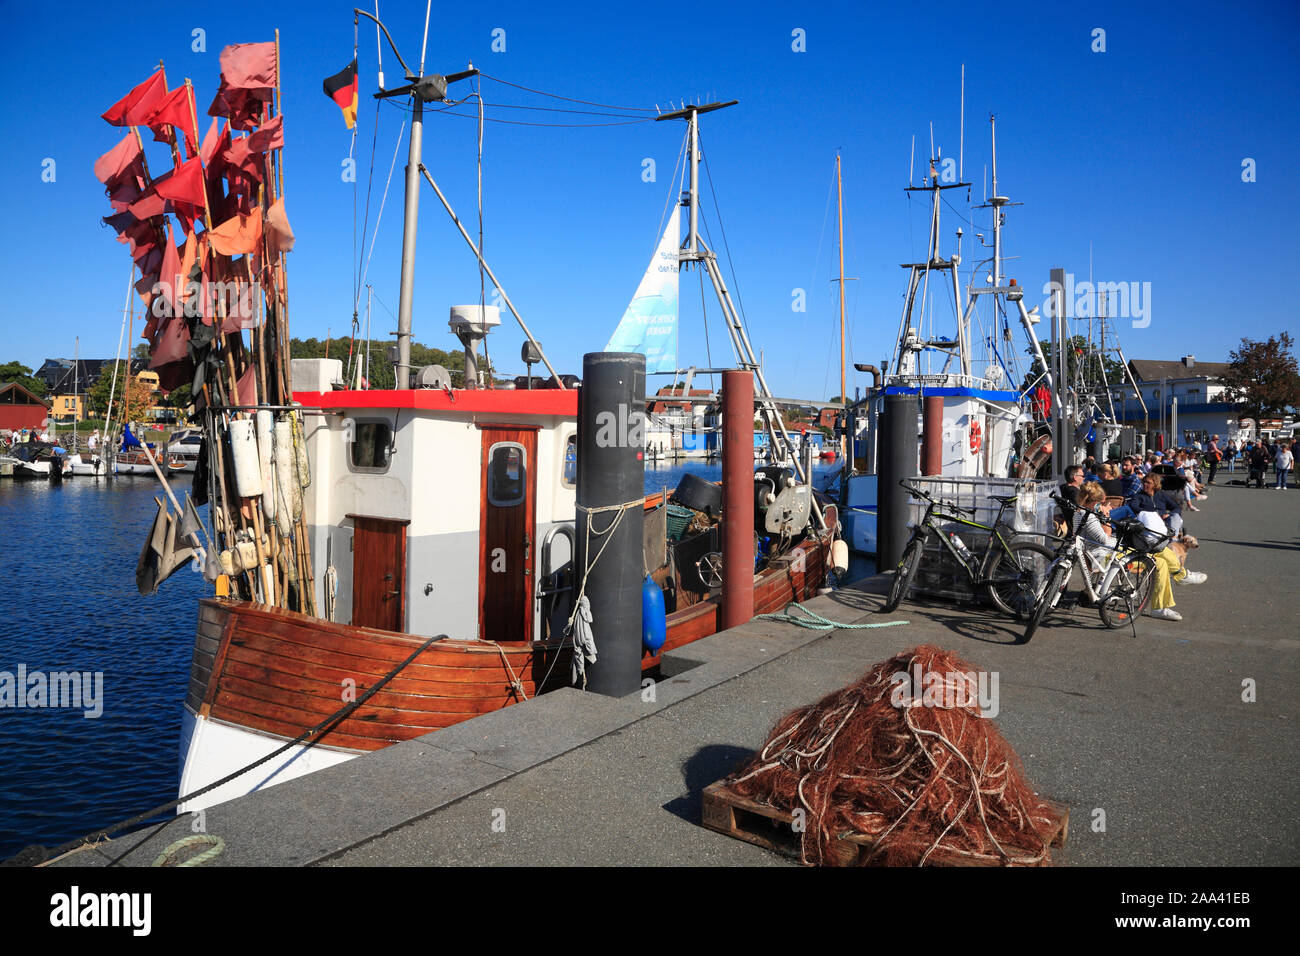 Chalutier de pêche dans le port de Niendorf / Mer Baltique, Timmendorfer Strand, Holstein Suisse, Allemagne Banque D'Images